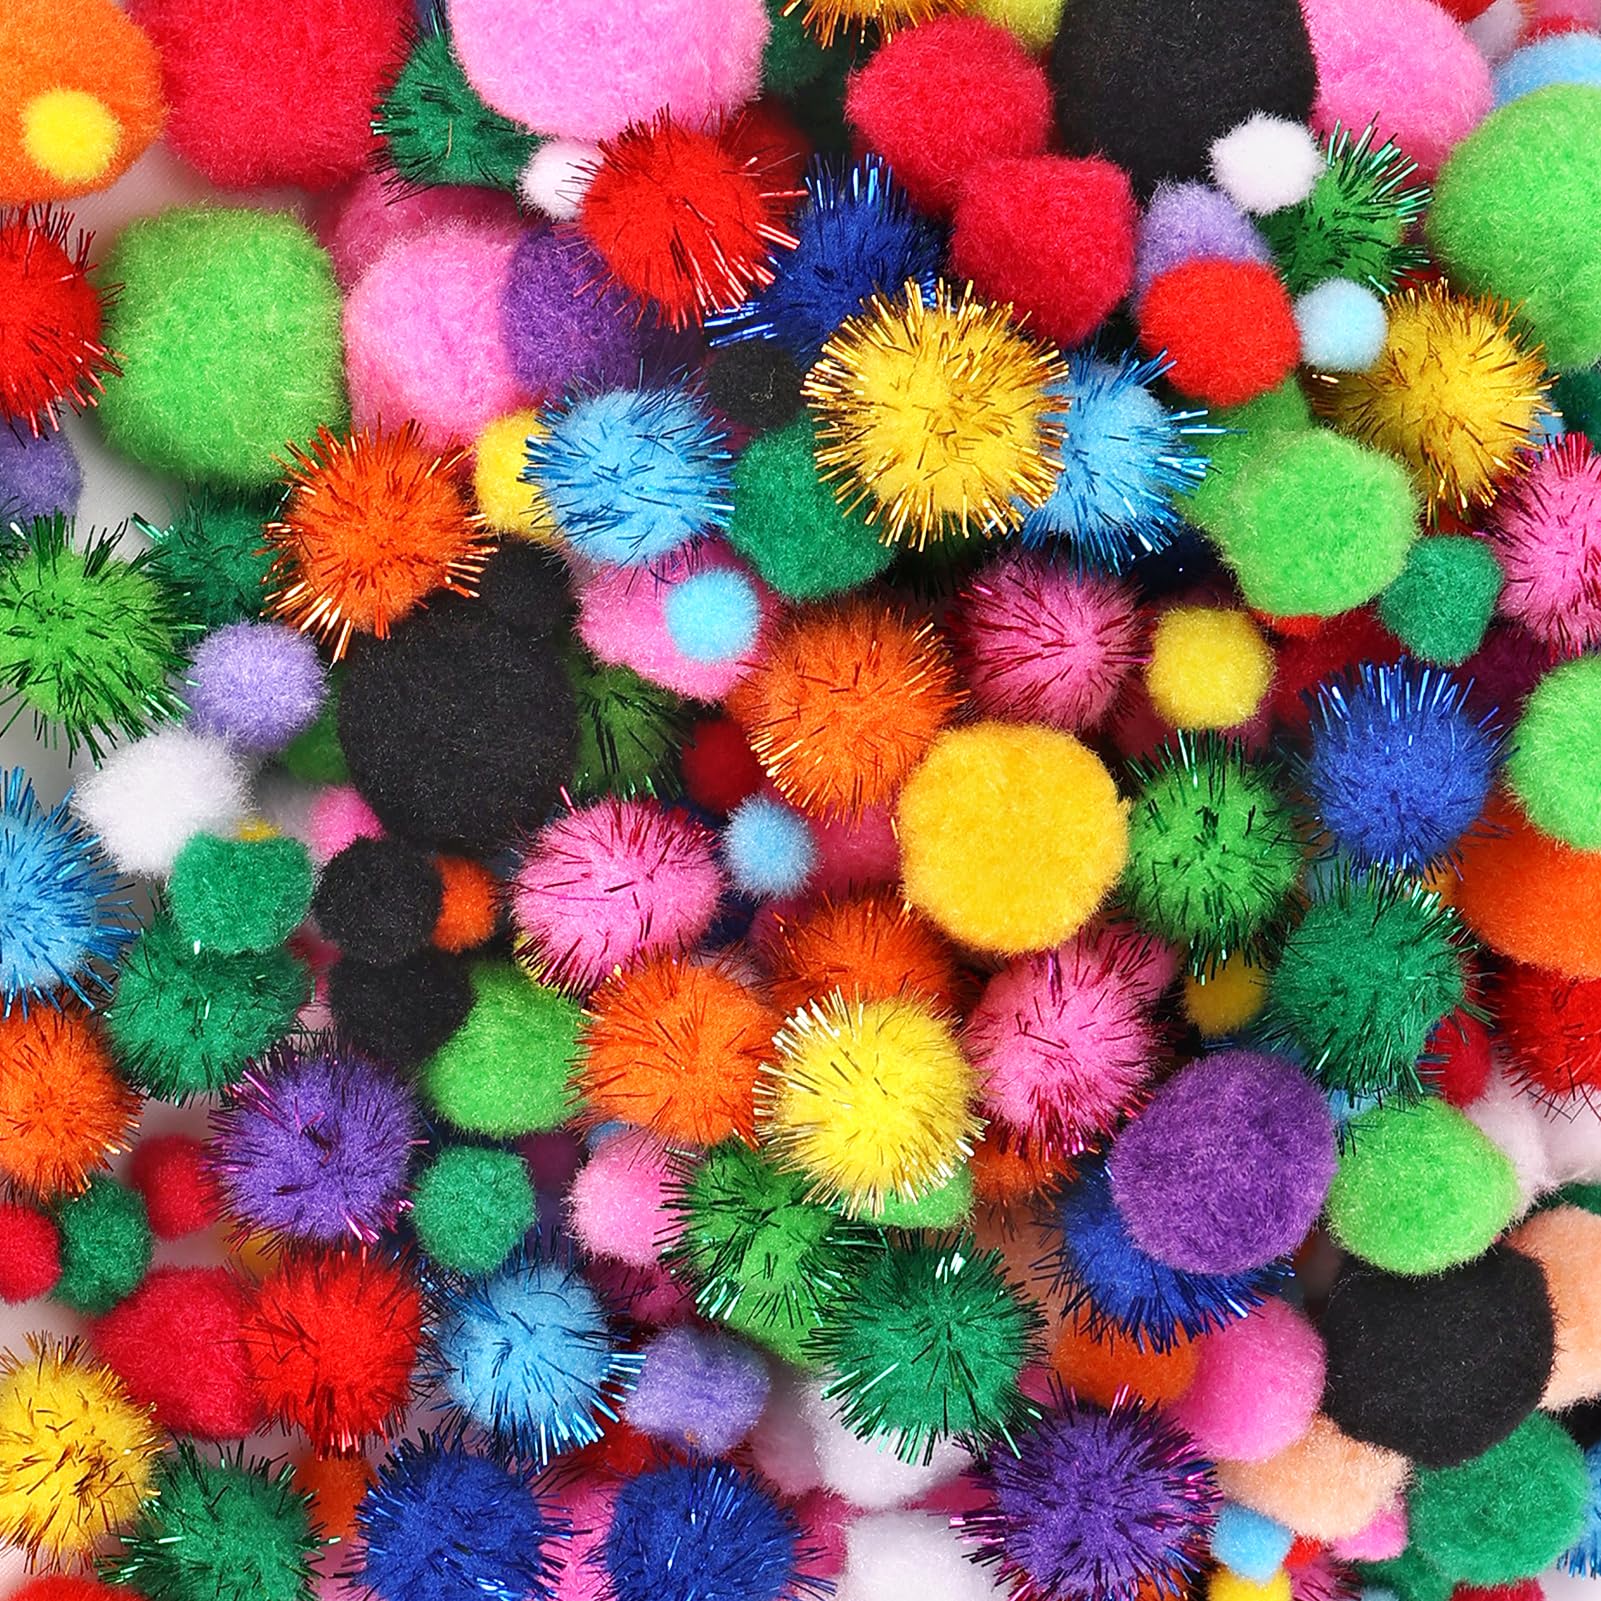 Fluff Ball Pom Poms Maker 4PCS, Crochet Pom Poms Maker Knitting Tool, Pompom  Balls Yarn Crafting Machine Tool Kit, Kids & Adults Yarn Crochet Pompom  Maker Craft, Easy Beginner Craft Pompom Balls